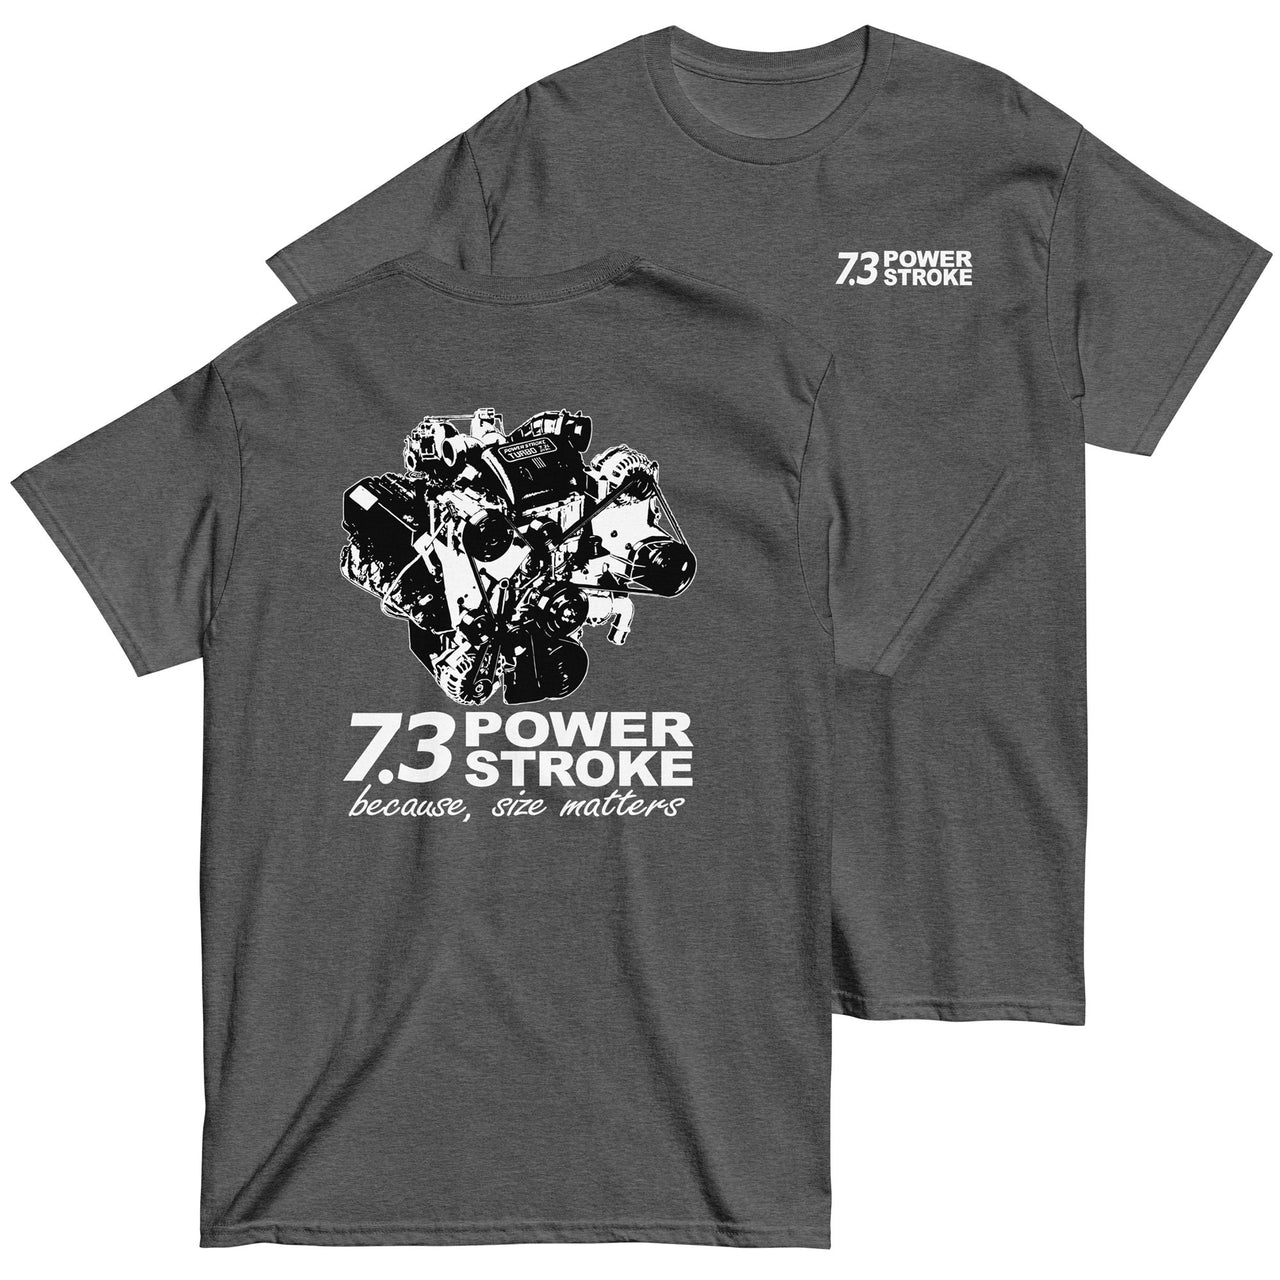 7.3 Power Stroke Size Matters T-Shirt  in grey